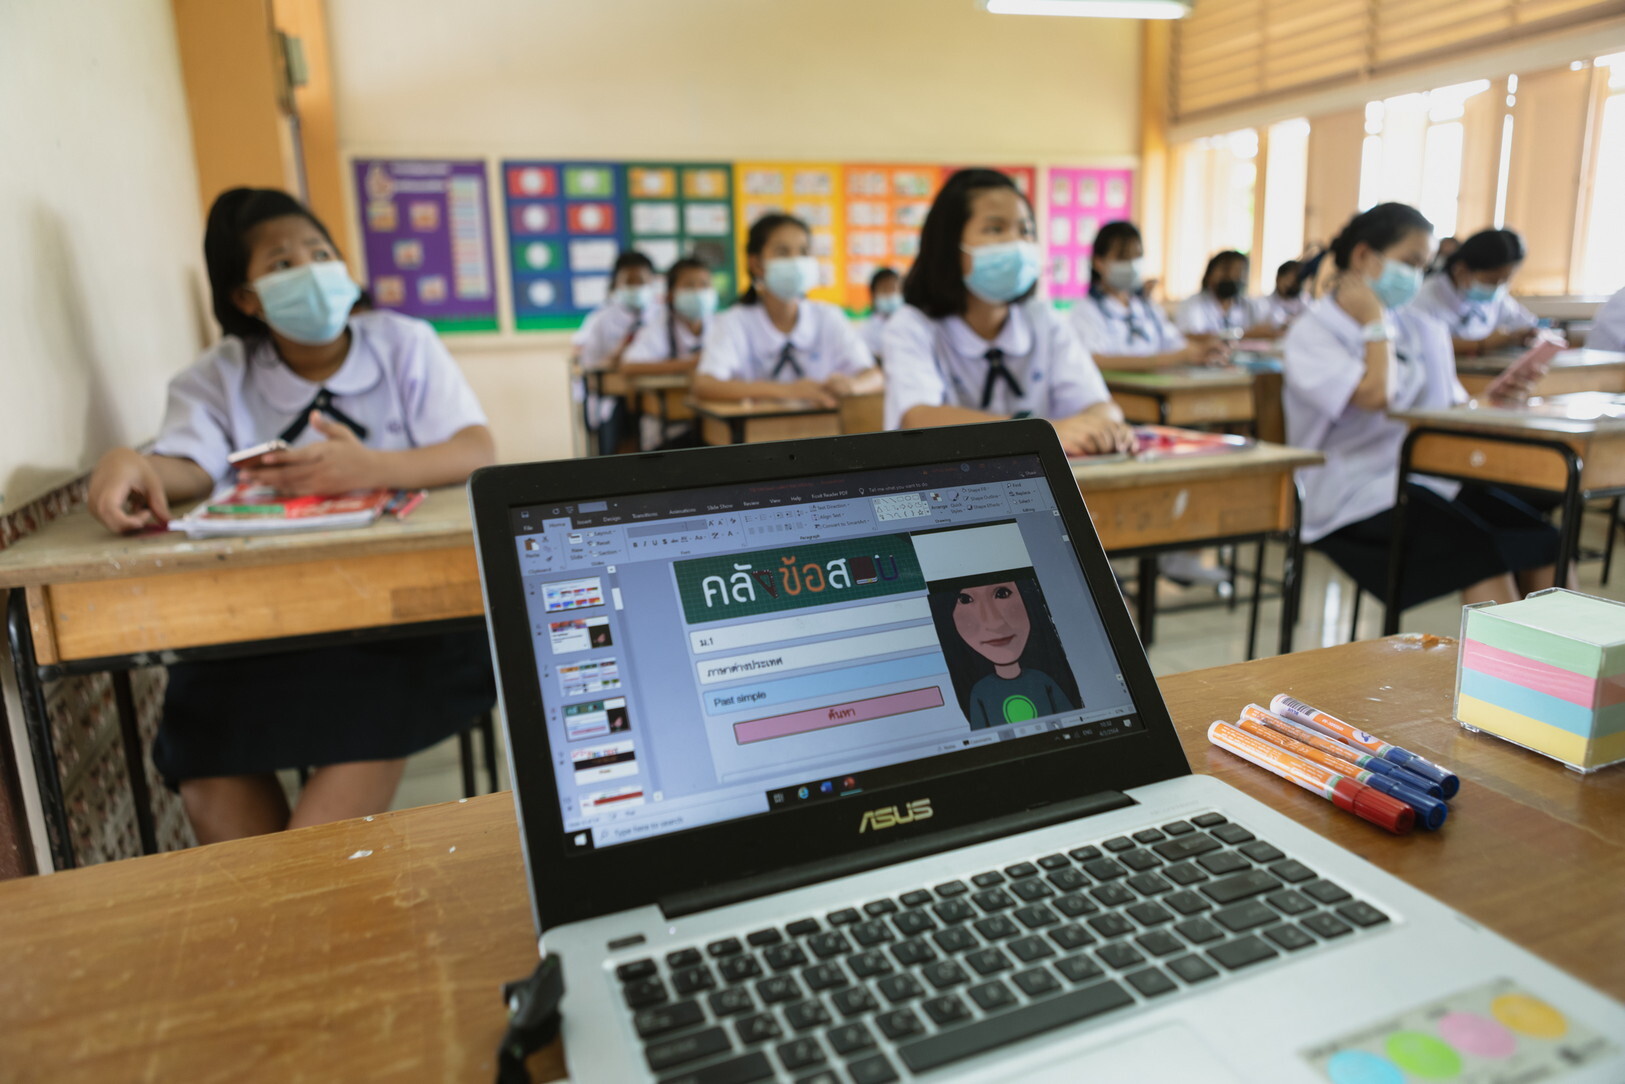 มูลนิธิเอเชียฯ ร่วมกับสถานทูตออสเตรเลีย จัดทำเว็บไซต์ Thailand Learning รวบรวมแหล่งเรียนรู้ในโลกออนไลน์ให้เด็กไทย